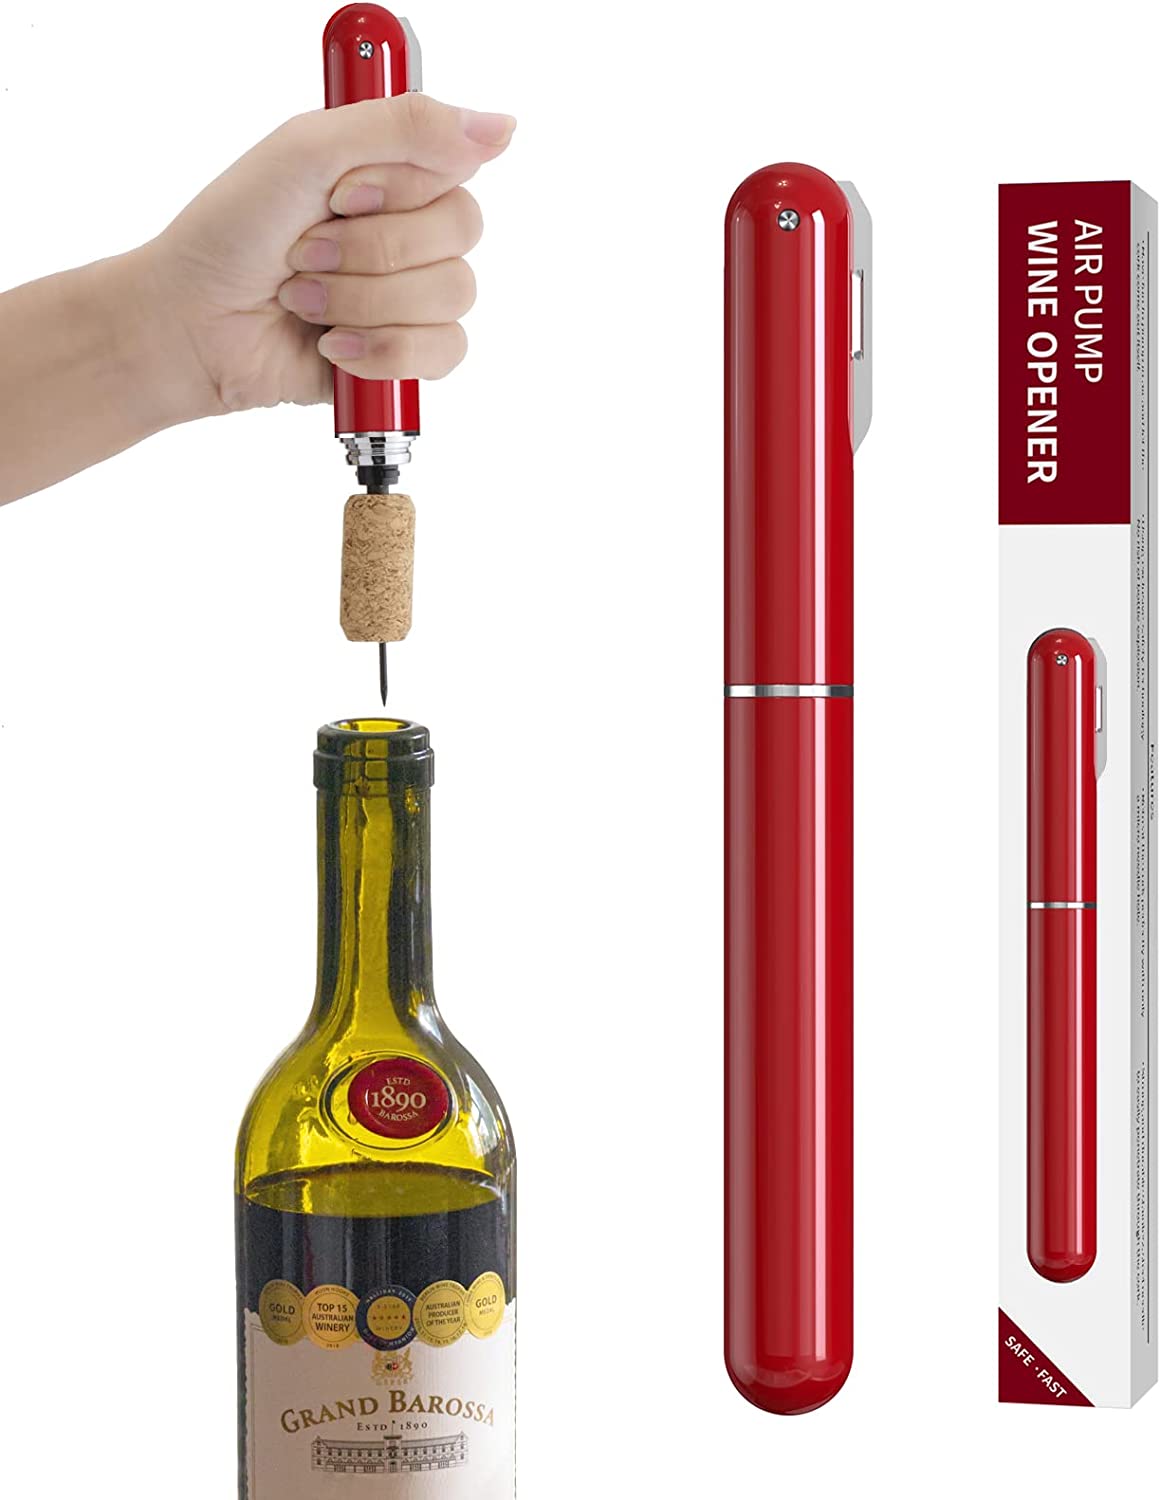 エアーポンプ式ワインオープナー フォイルカッター付き 2in1 空気圧ワインオープナー ワインボトルオープナー 簡単に開けられる 携帯用旅行 ワインコルクスクリュー ハンドヘルド